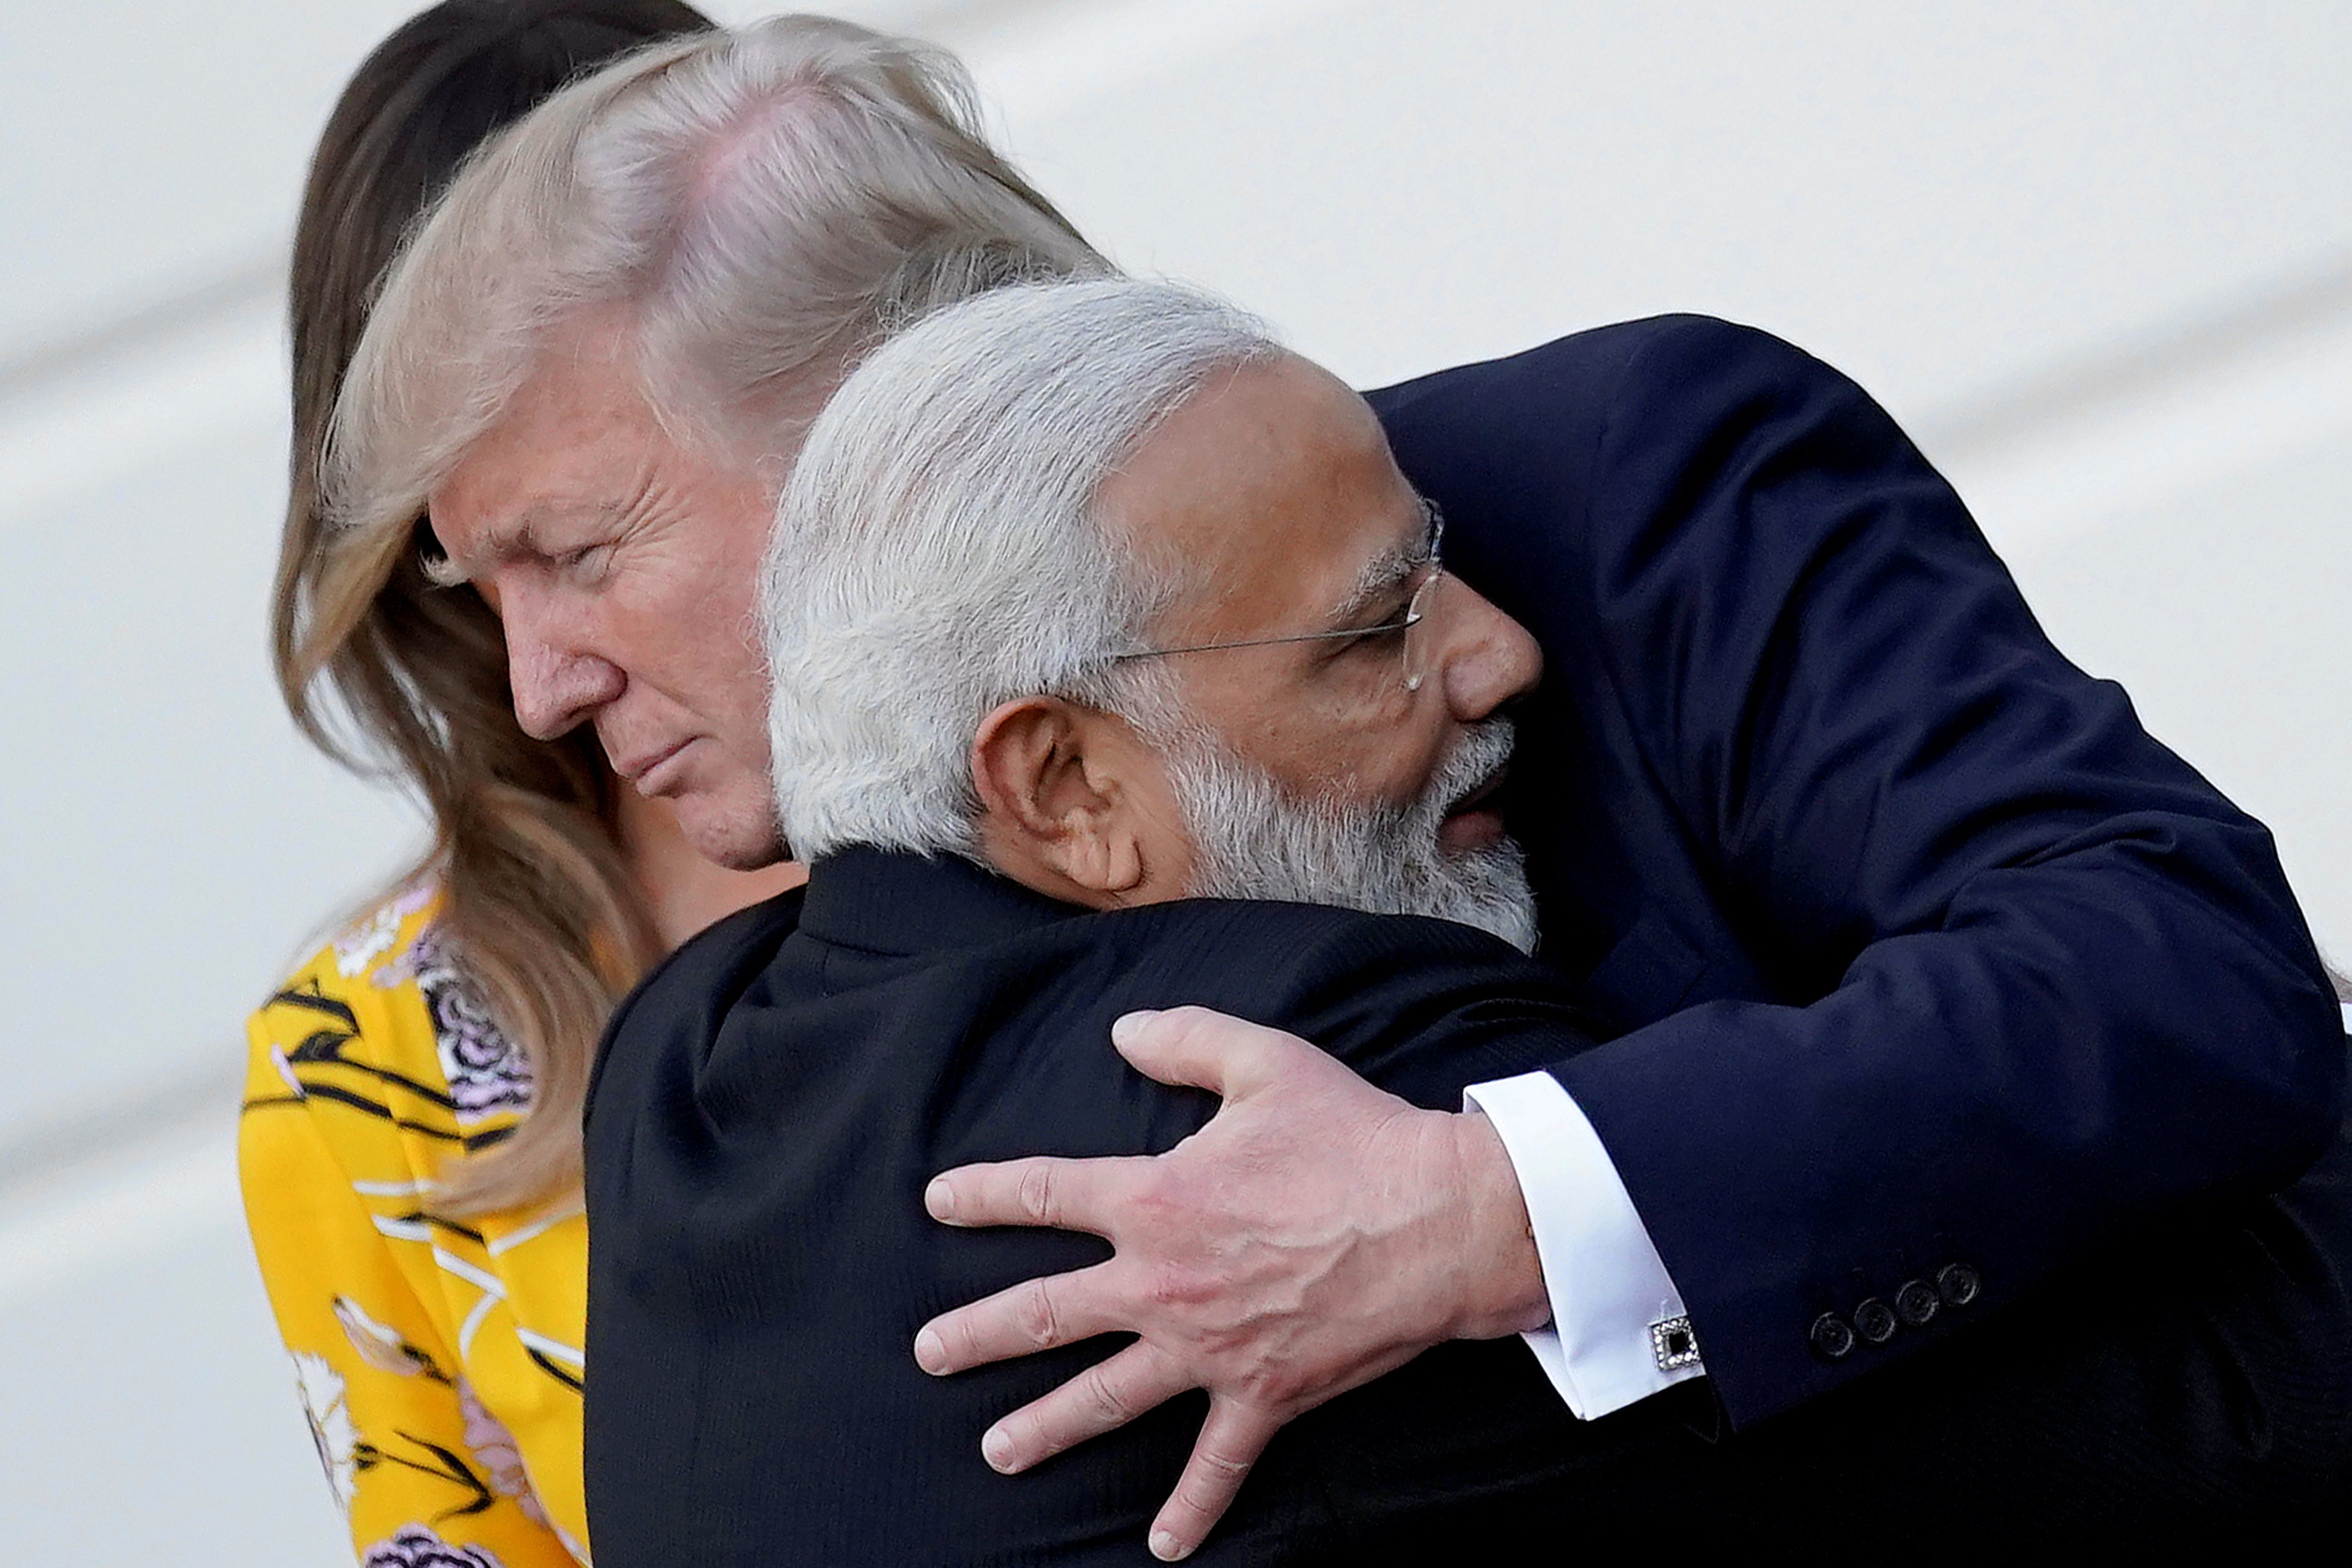 US President Donald Trump embraces India's Prime Minister Narendra Modi. Photo: Reuters